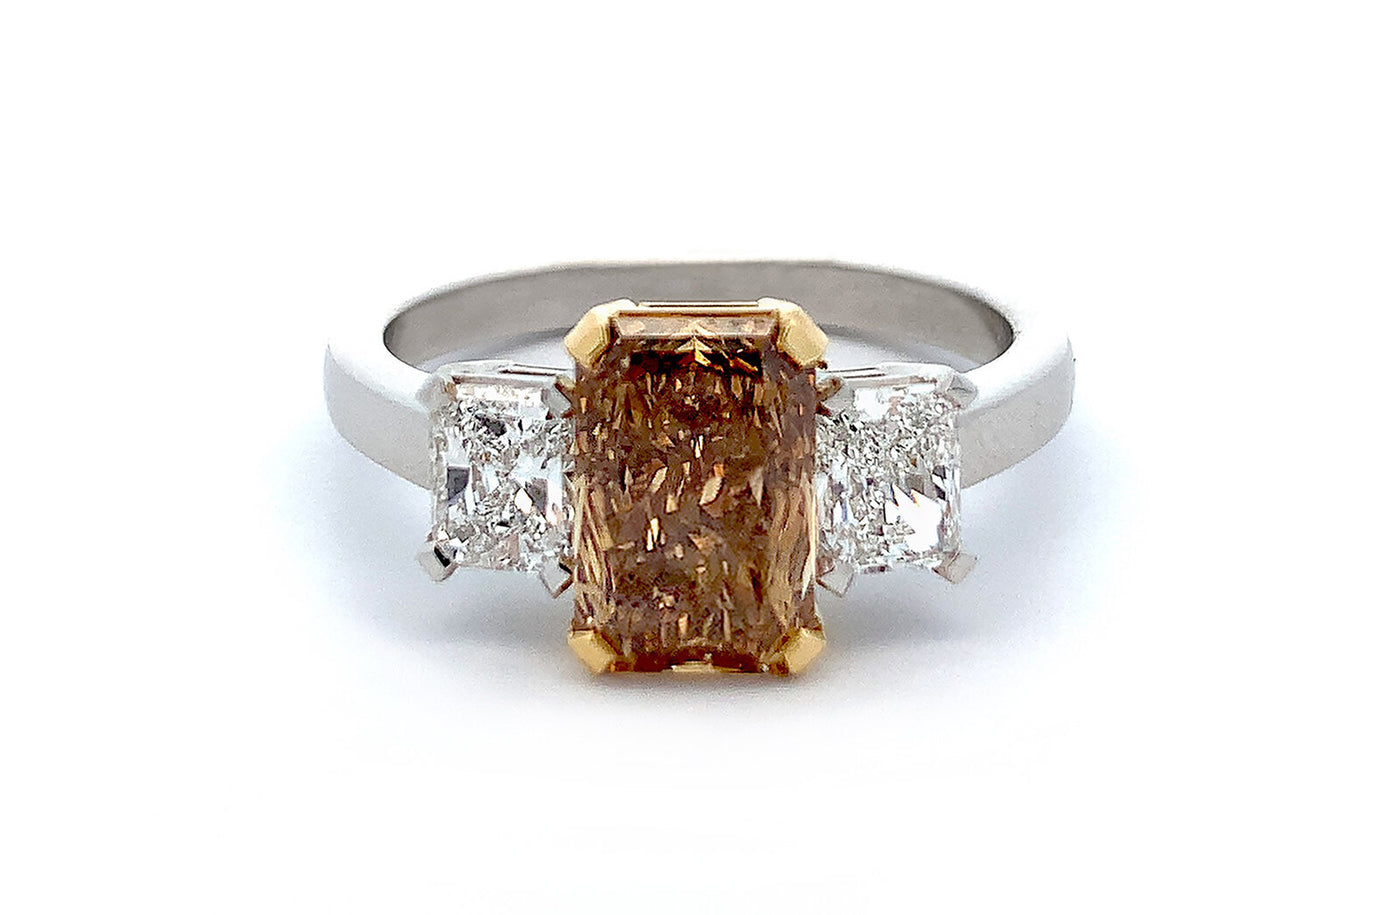 Cognac Diamond and Diamond Three Stone Ring